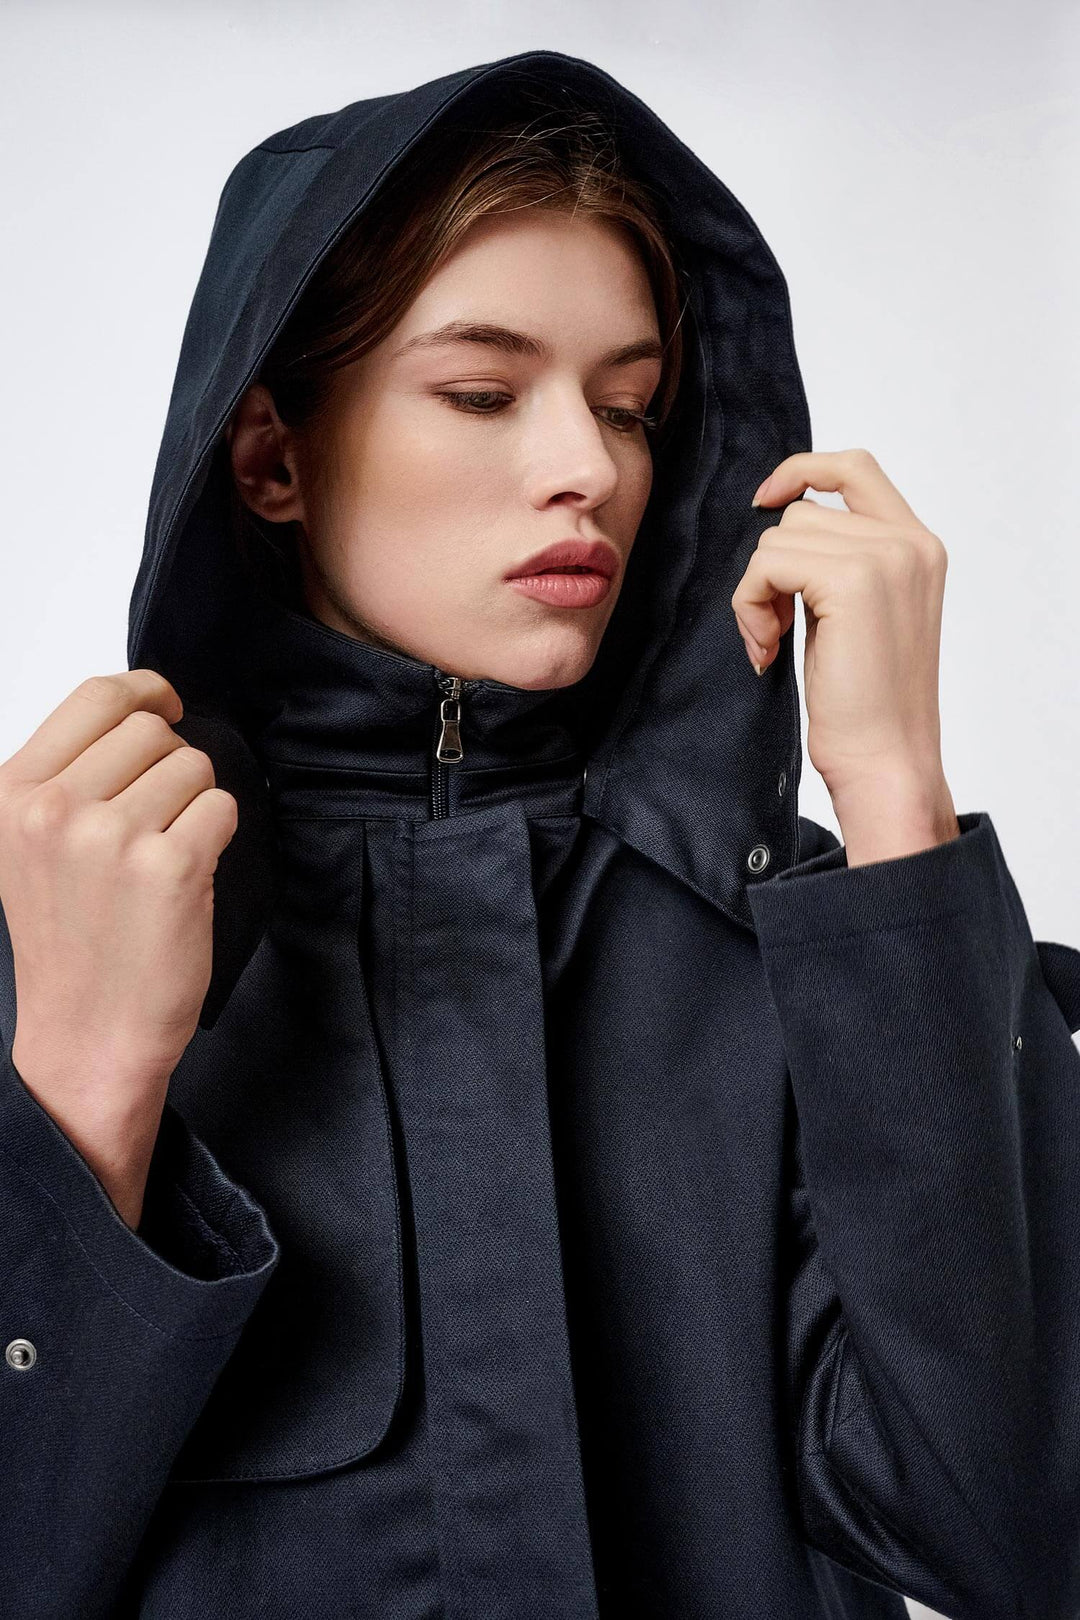 Water-resistant hooded coat